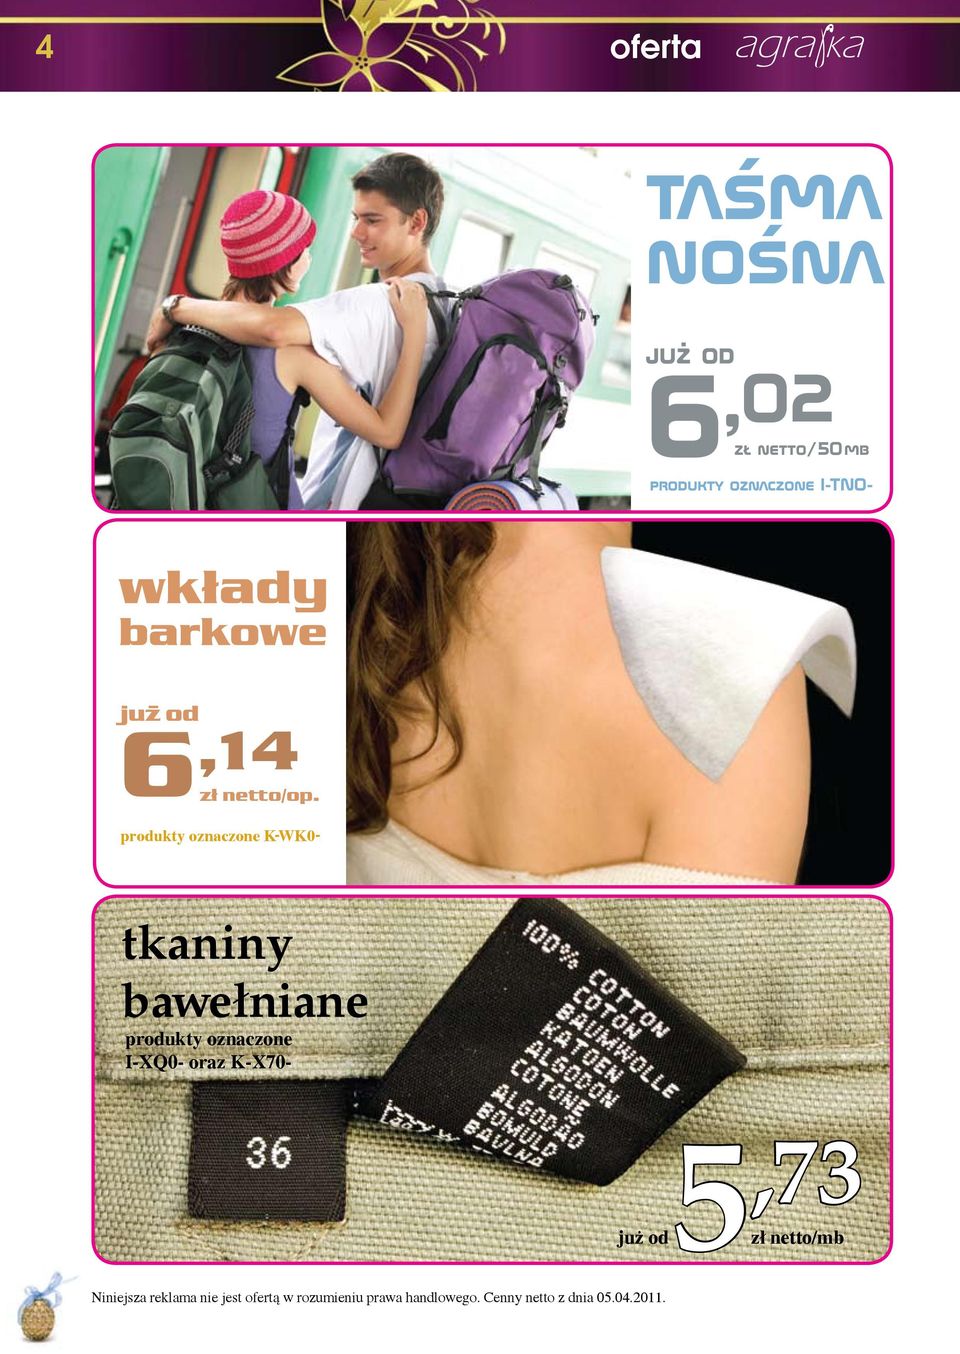 produkty oznaczone K-WK0- tkaniny bawełniane produkty oznaczone I-XQ0-